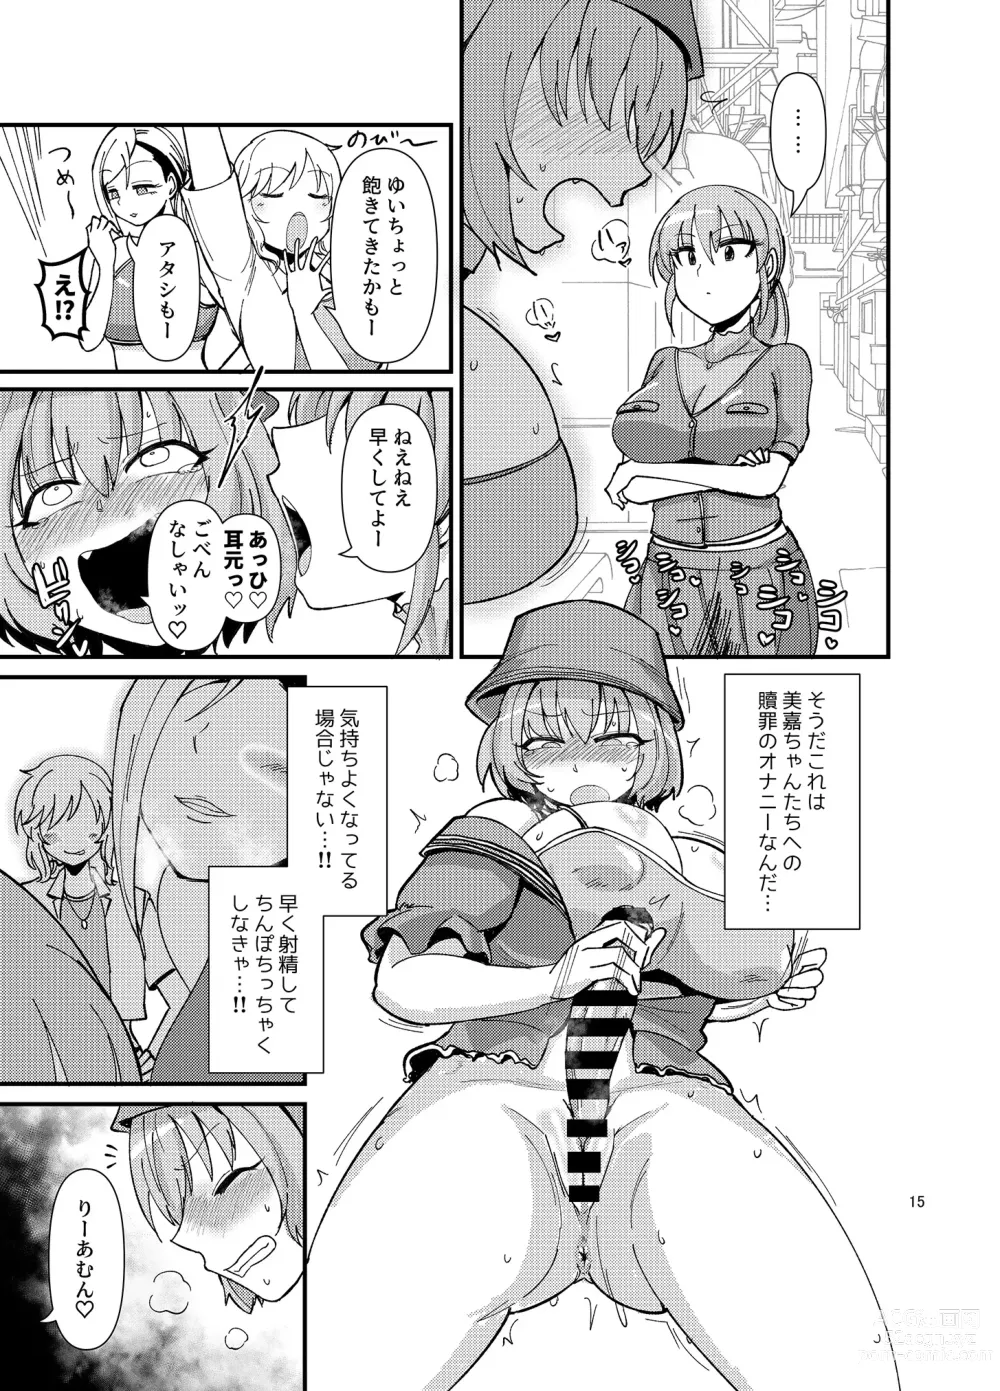 Page 15 of doujinshi Gal shika Tatan!